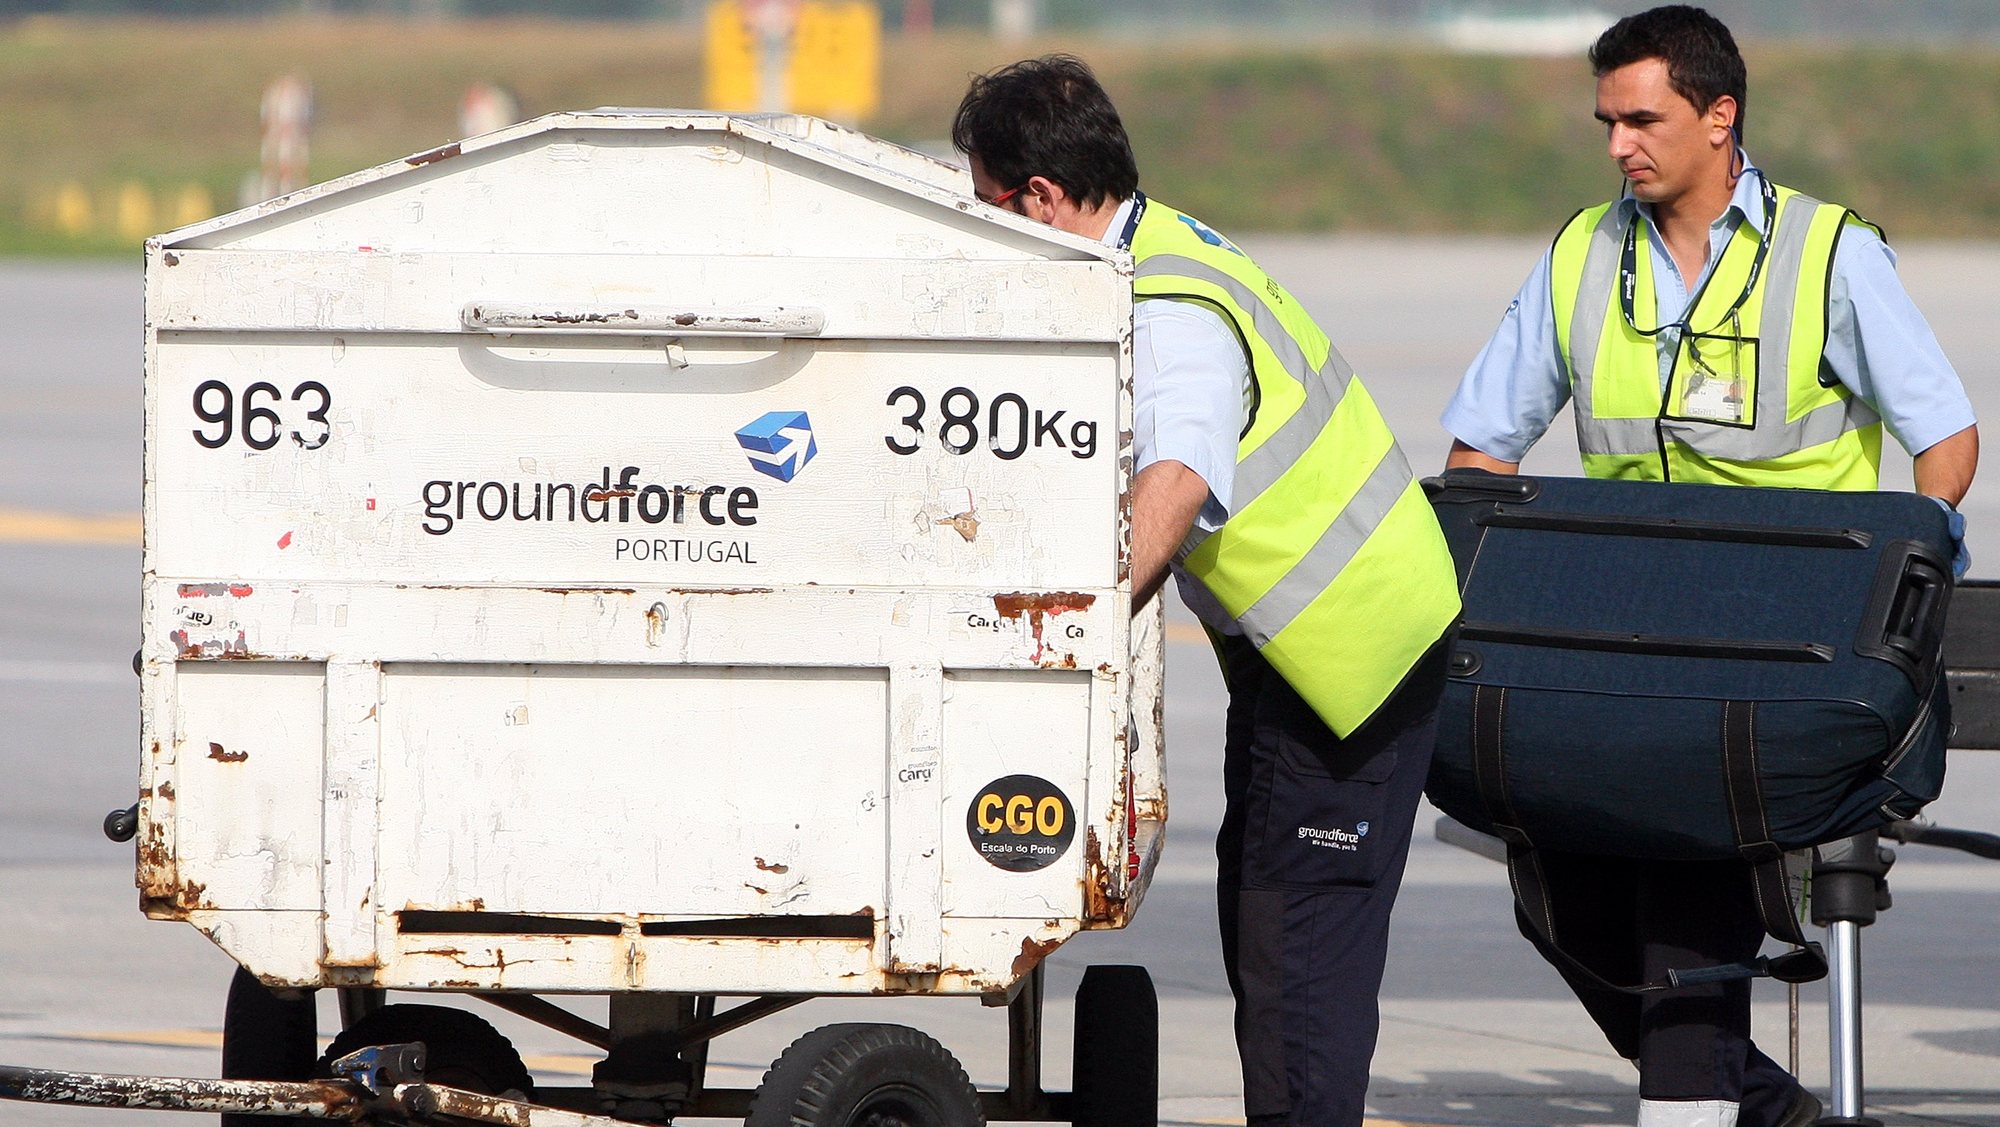 Funcionários da Groundforce carregam um carrinho com malas, no aeroporto Francisco Sá Carneiro, Porto, 27 de junho de 2012. JOSE COELHO/LUSA